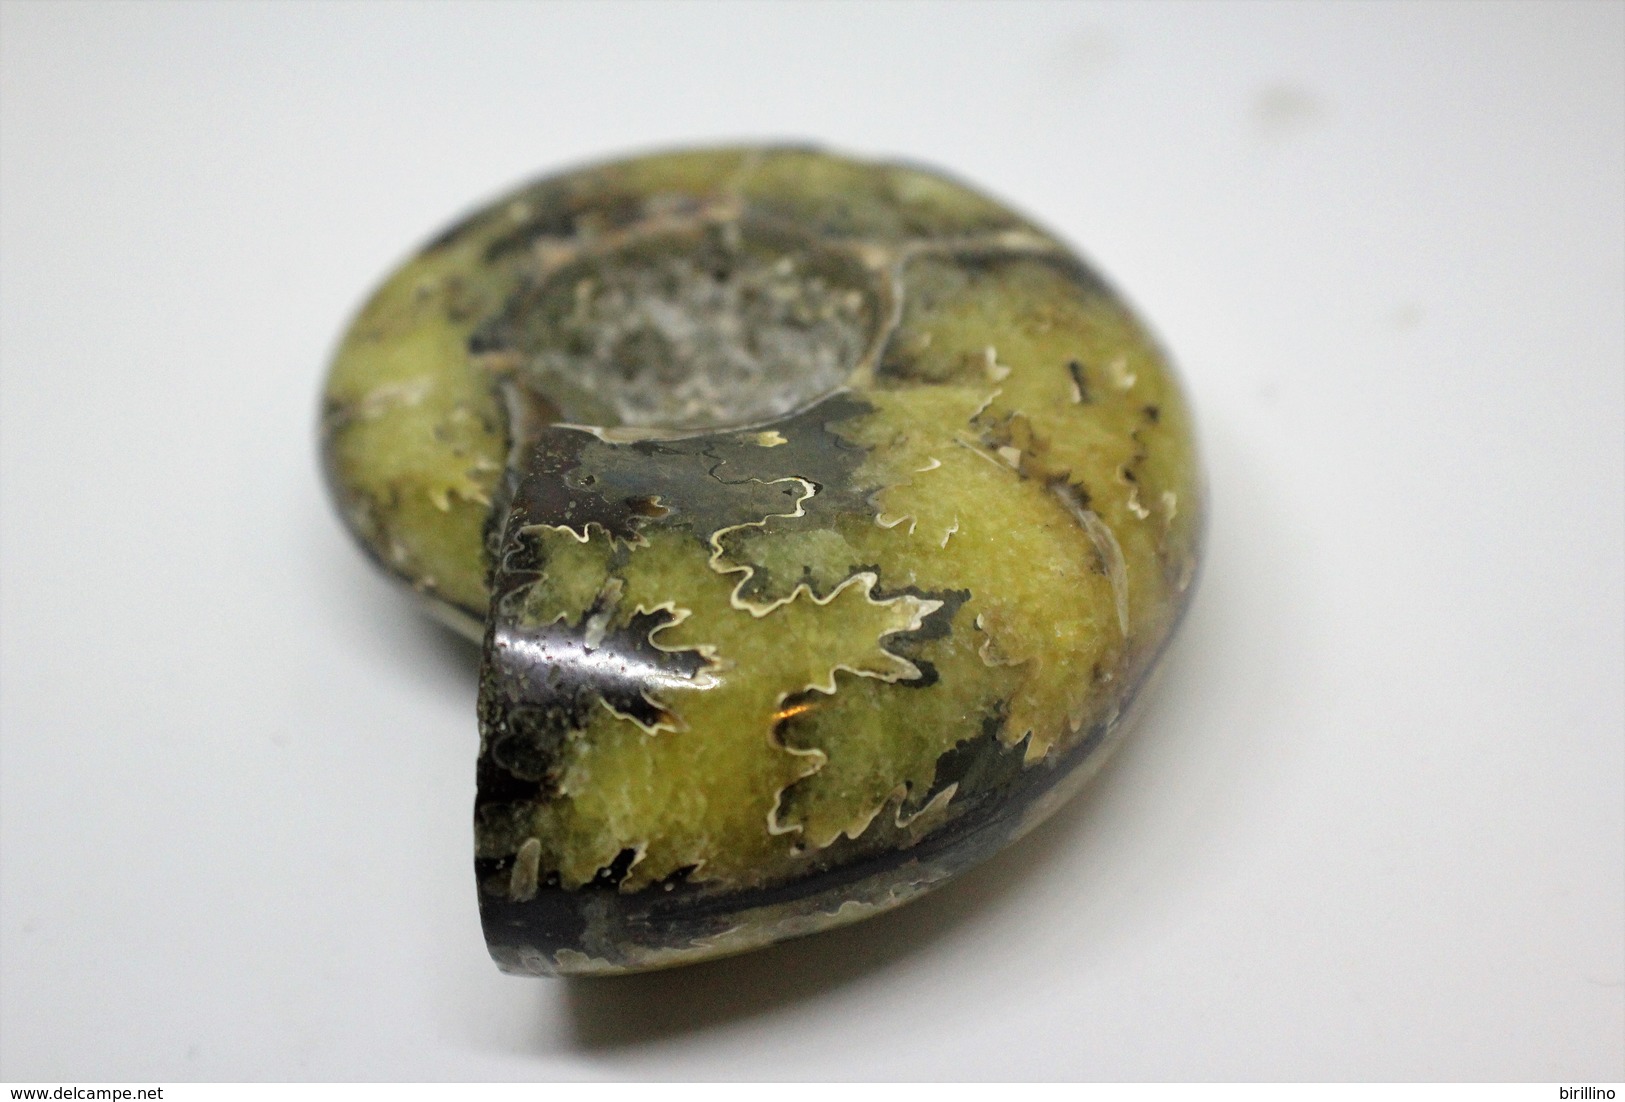 992 - Raro fossile di ammonite di conchiglia - Provenienza Madagascar Peso 230 gr